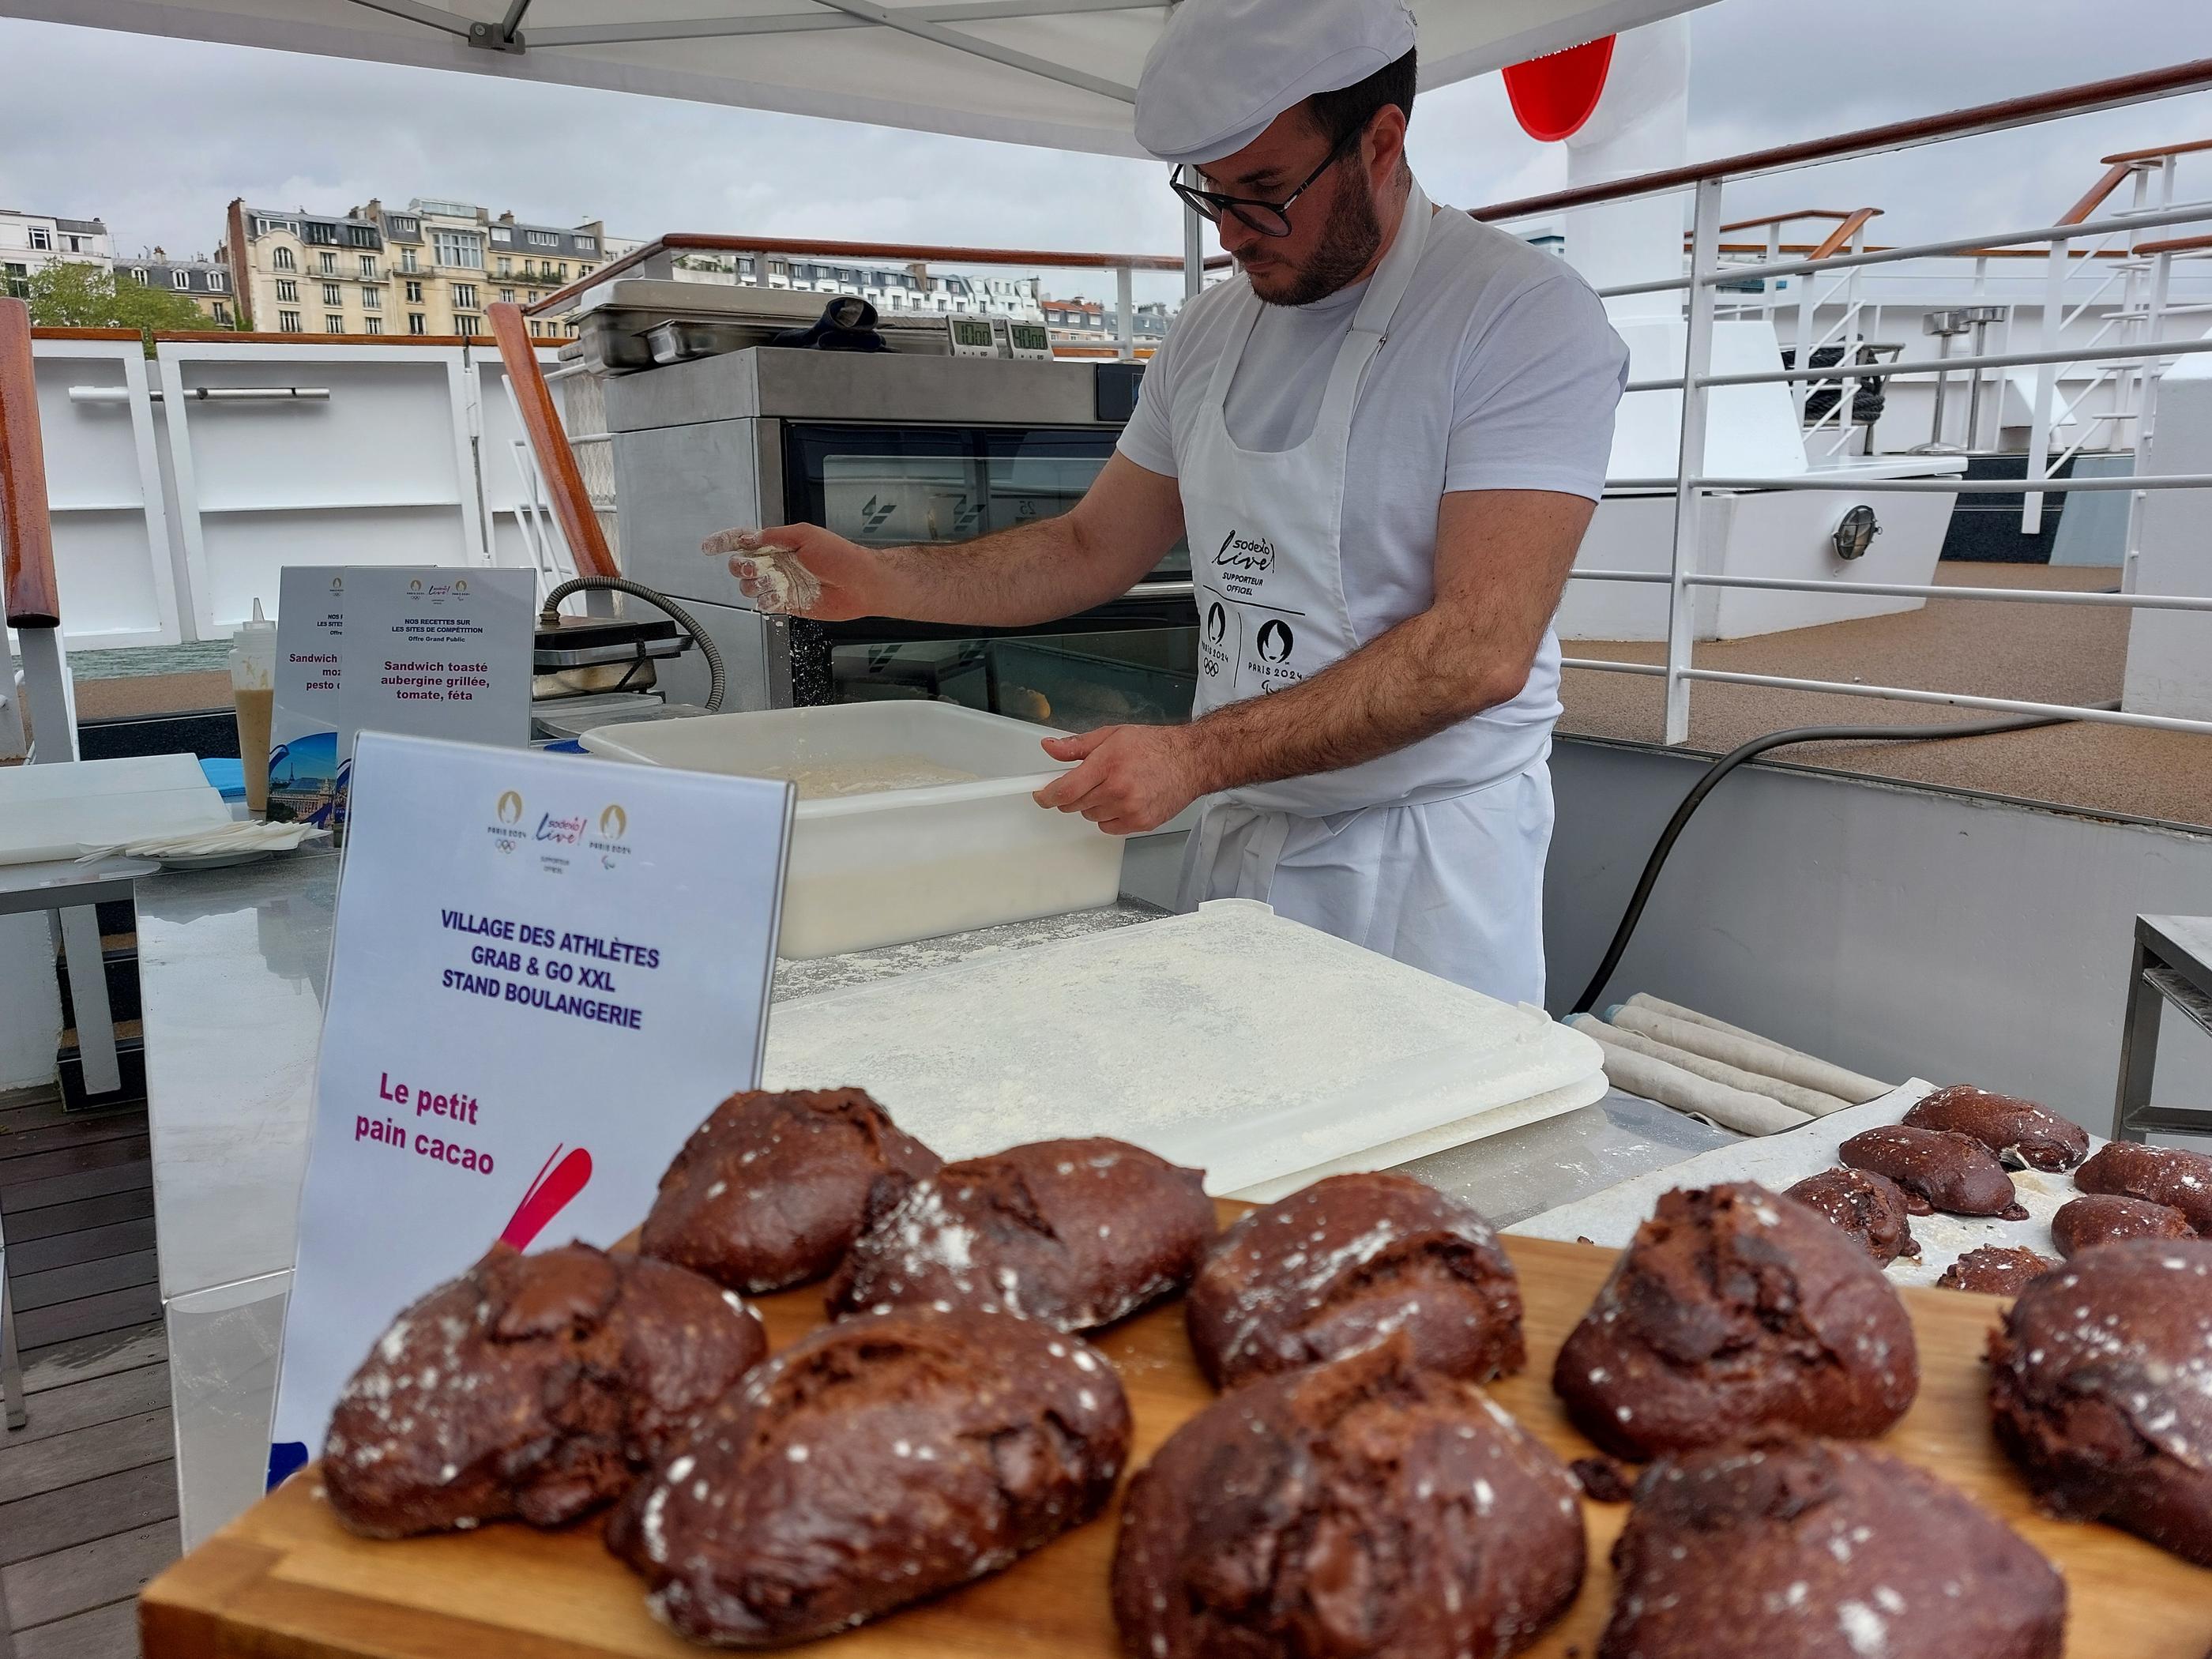 Au village olympique, un atelier boulangerie fabriquera, outre un petit pain cacao, entre 600 et 800 baguettes quotidiennement destinées aux sandwichs. LP/ Jean-Baptiste Quentin